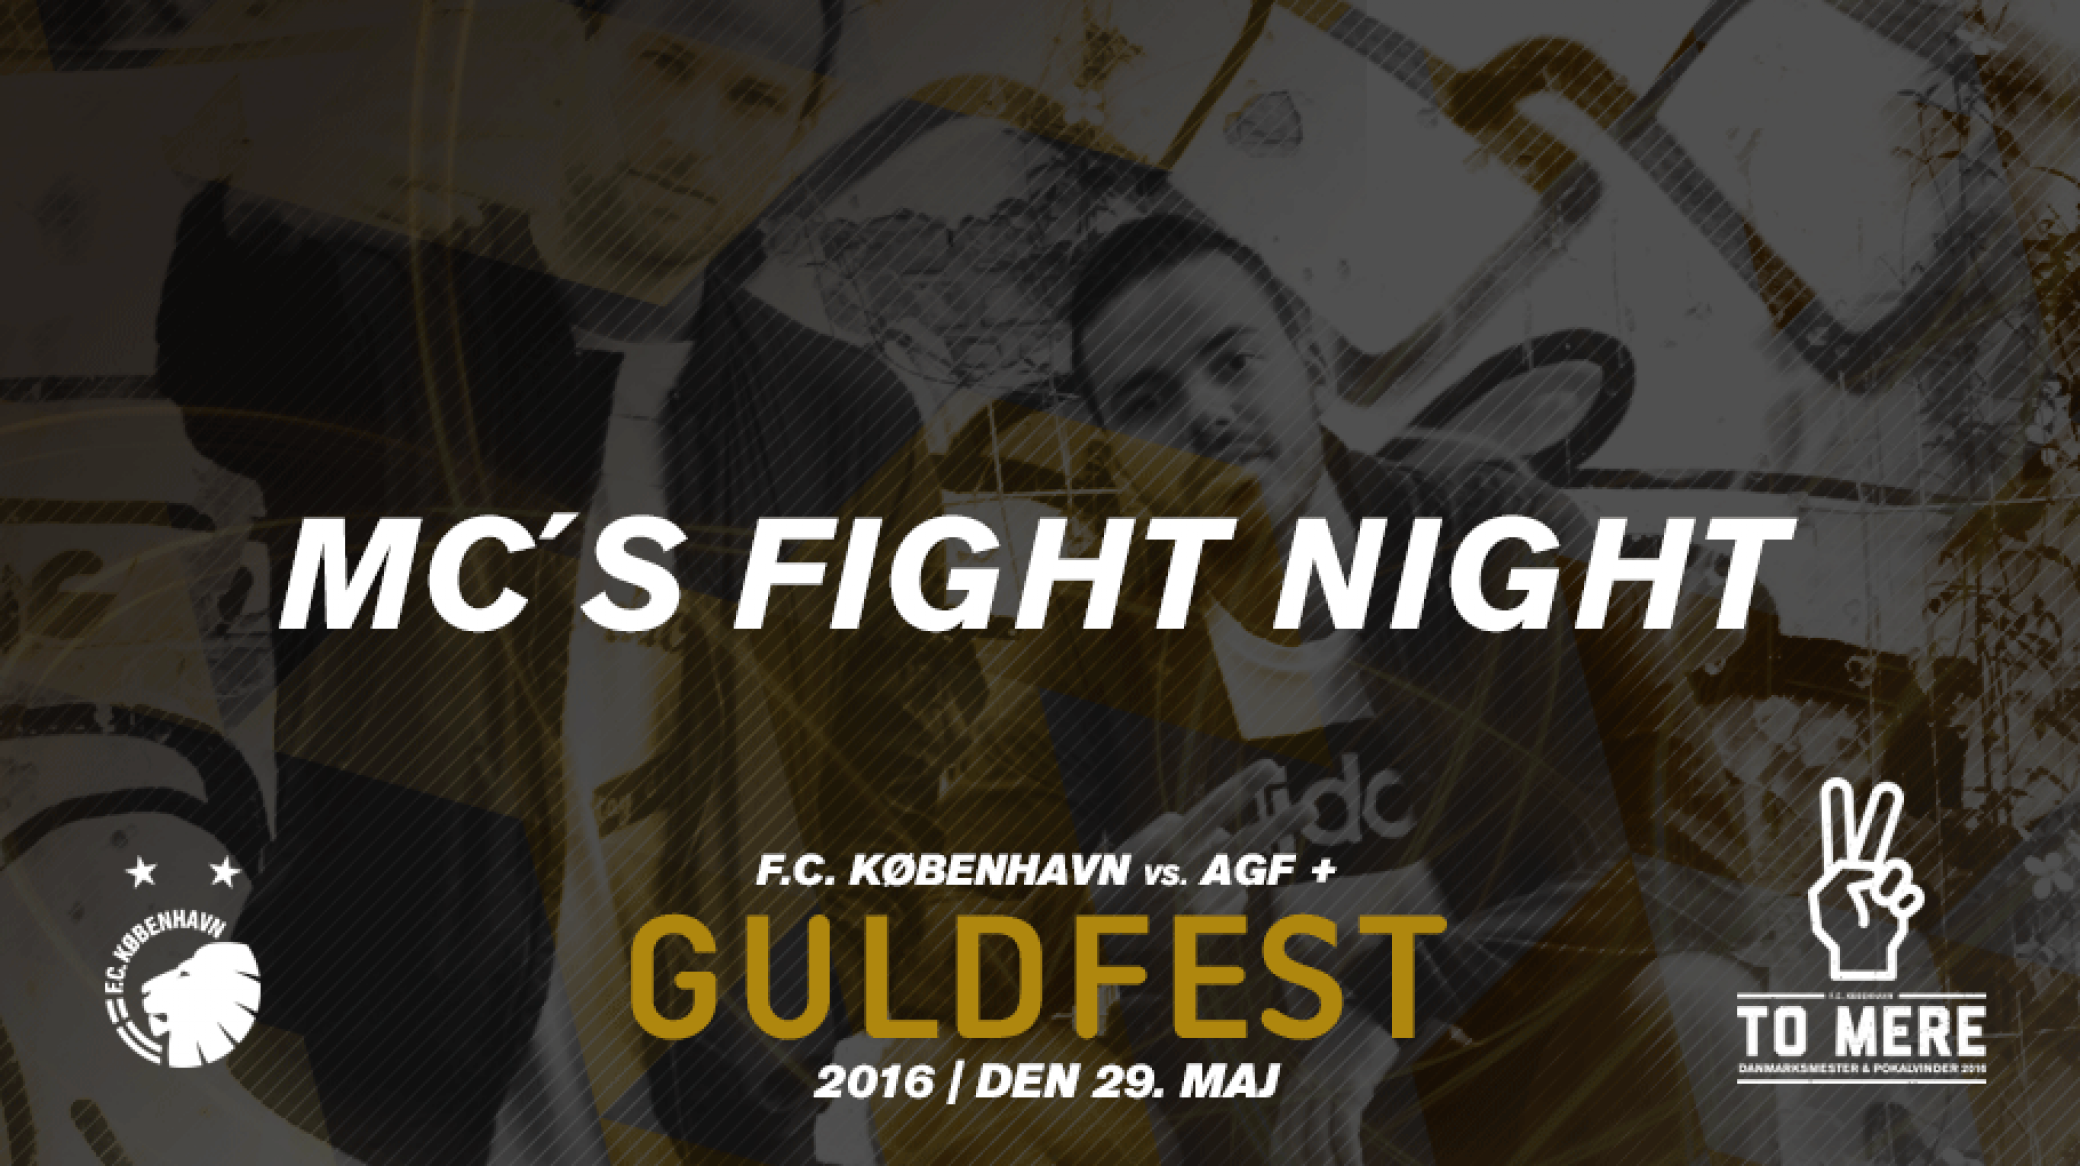 MC’s Fight Night til Guldfesten på søndag